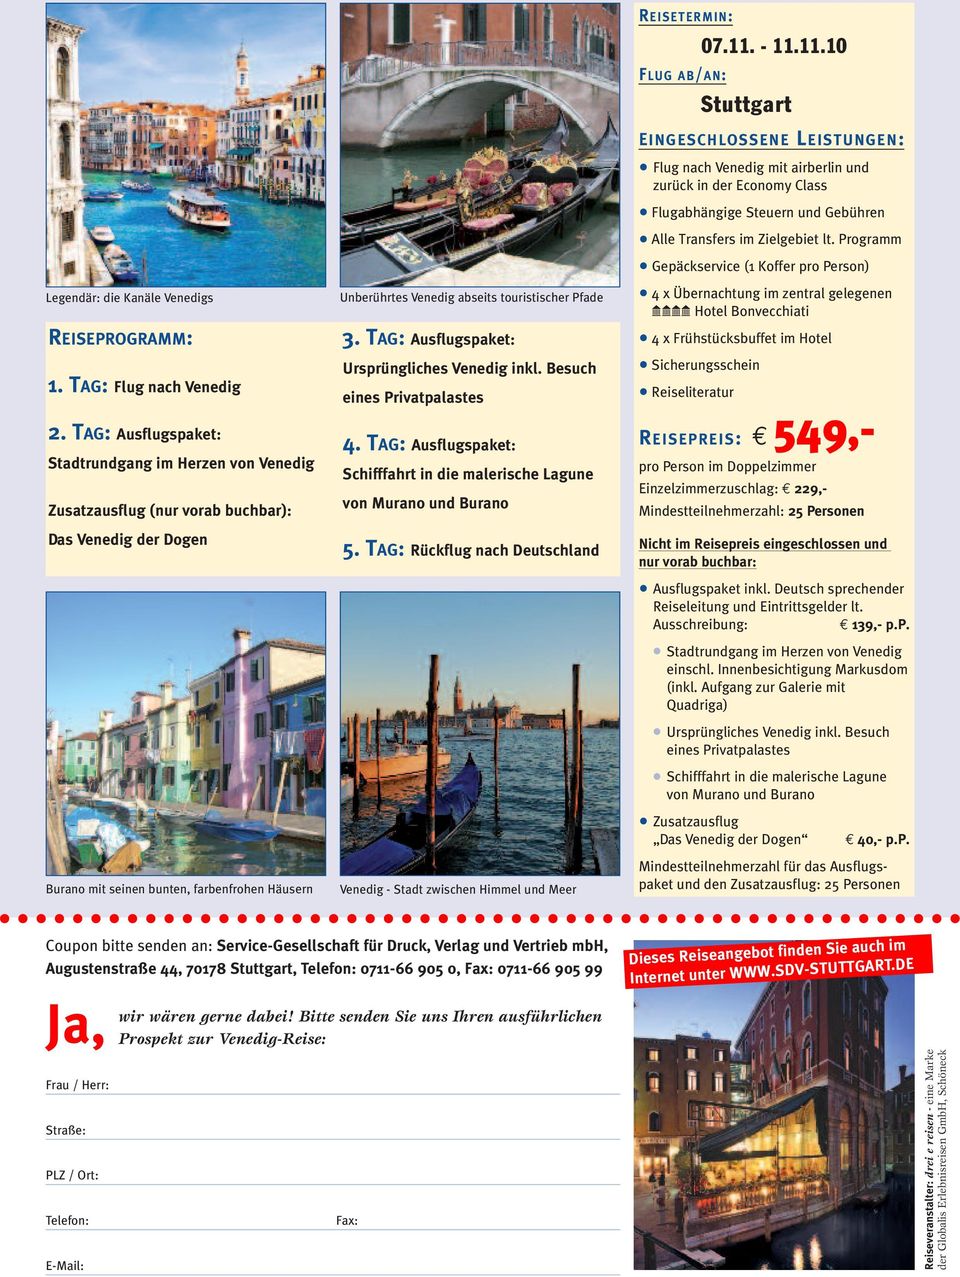 touristischer Pfade 3. TAG: Ausflugspaket: Ursprüngliches Venedig inkl. Besuch eines Privatpalastes 4. TAG: Ausflugspaket: Schifffahrt in die malerische Lagune von Murano und Burano 5.